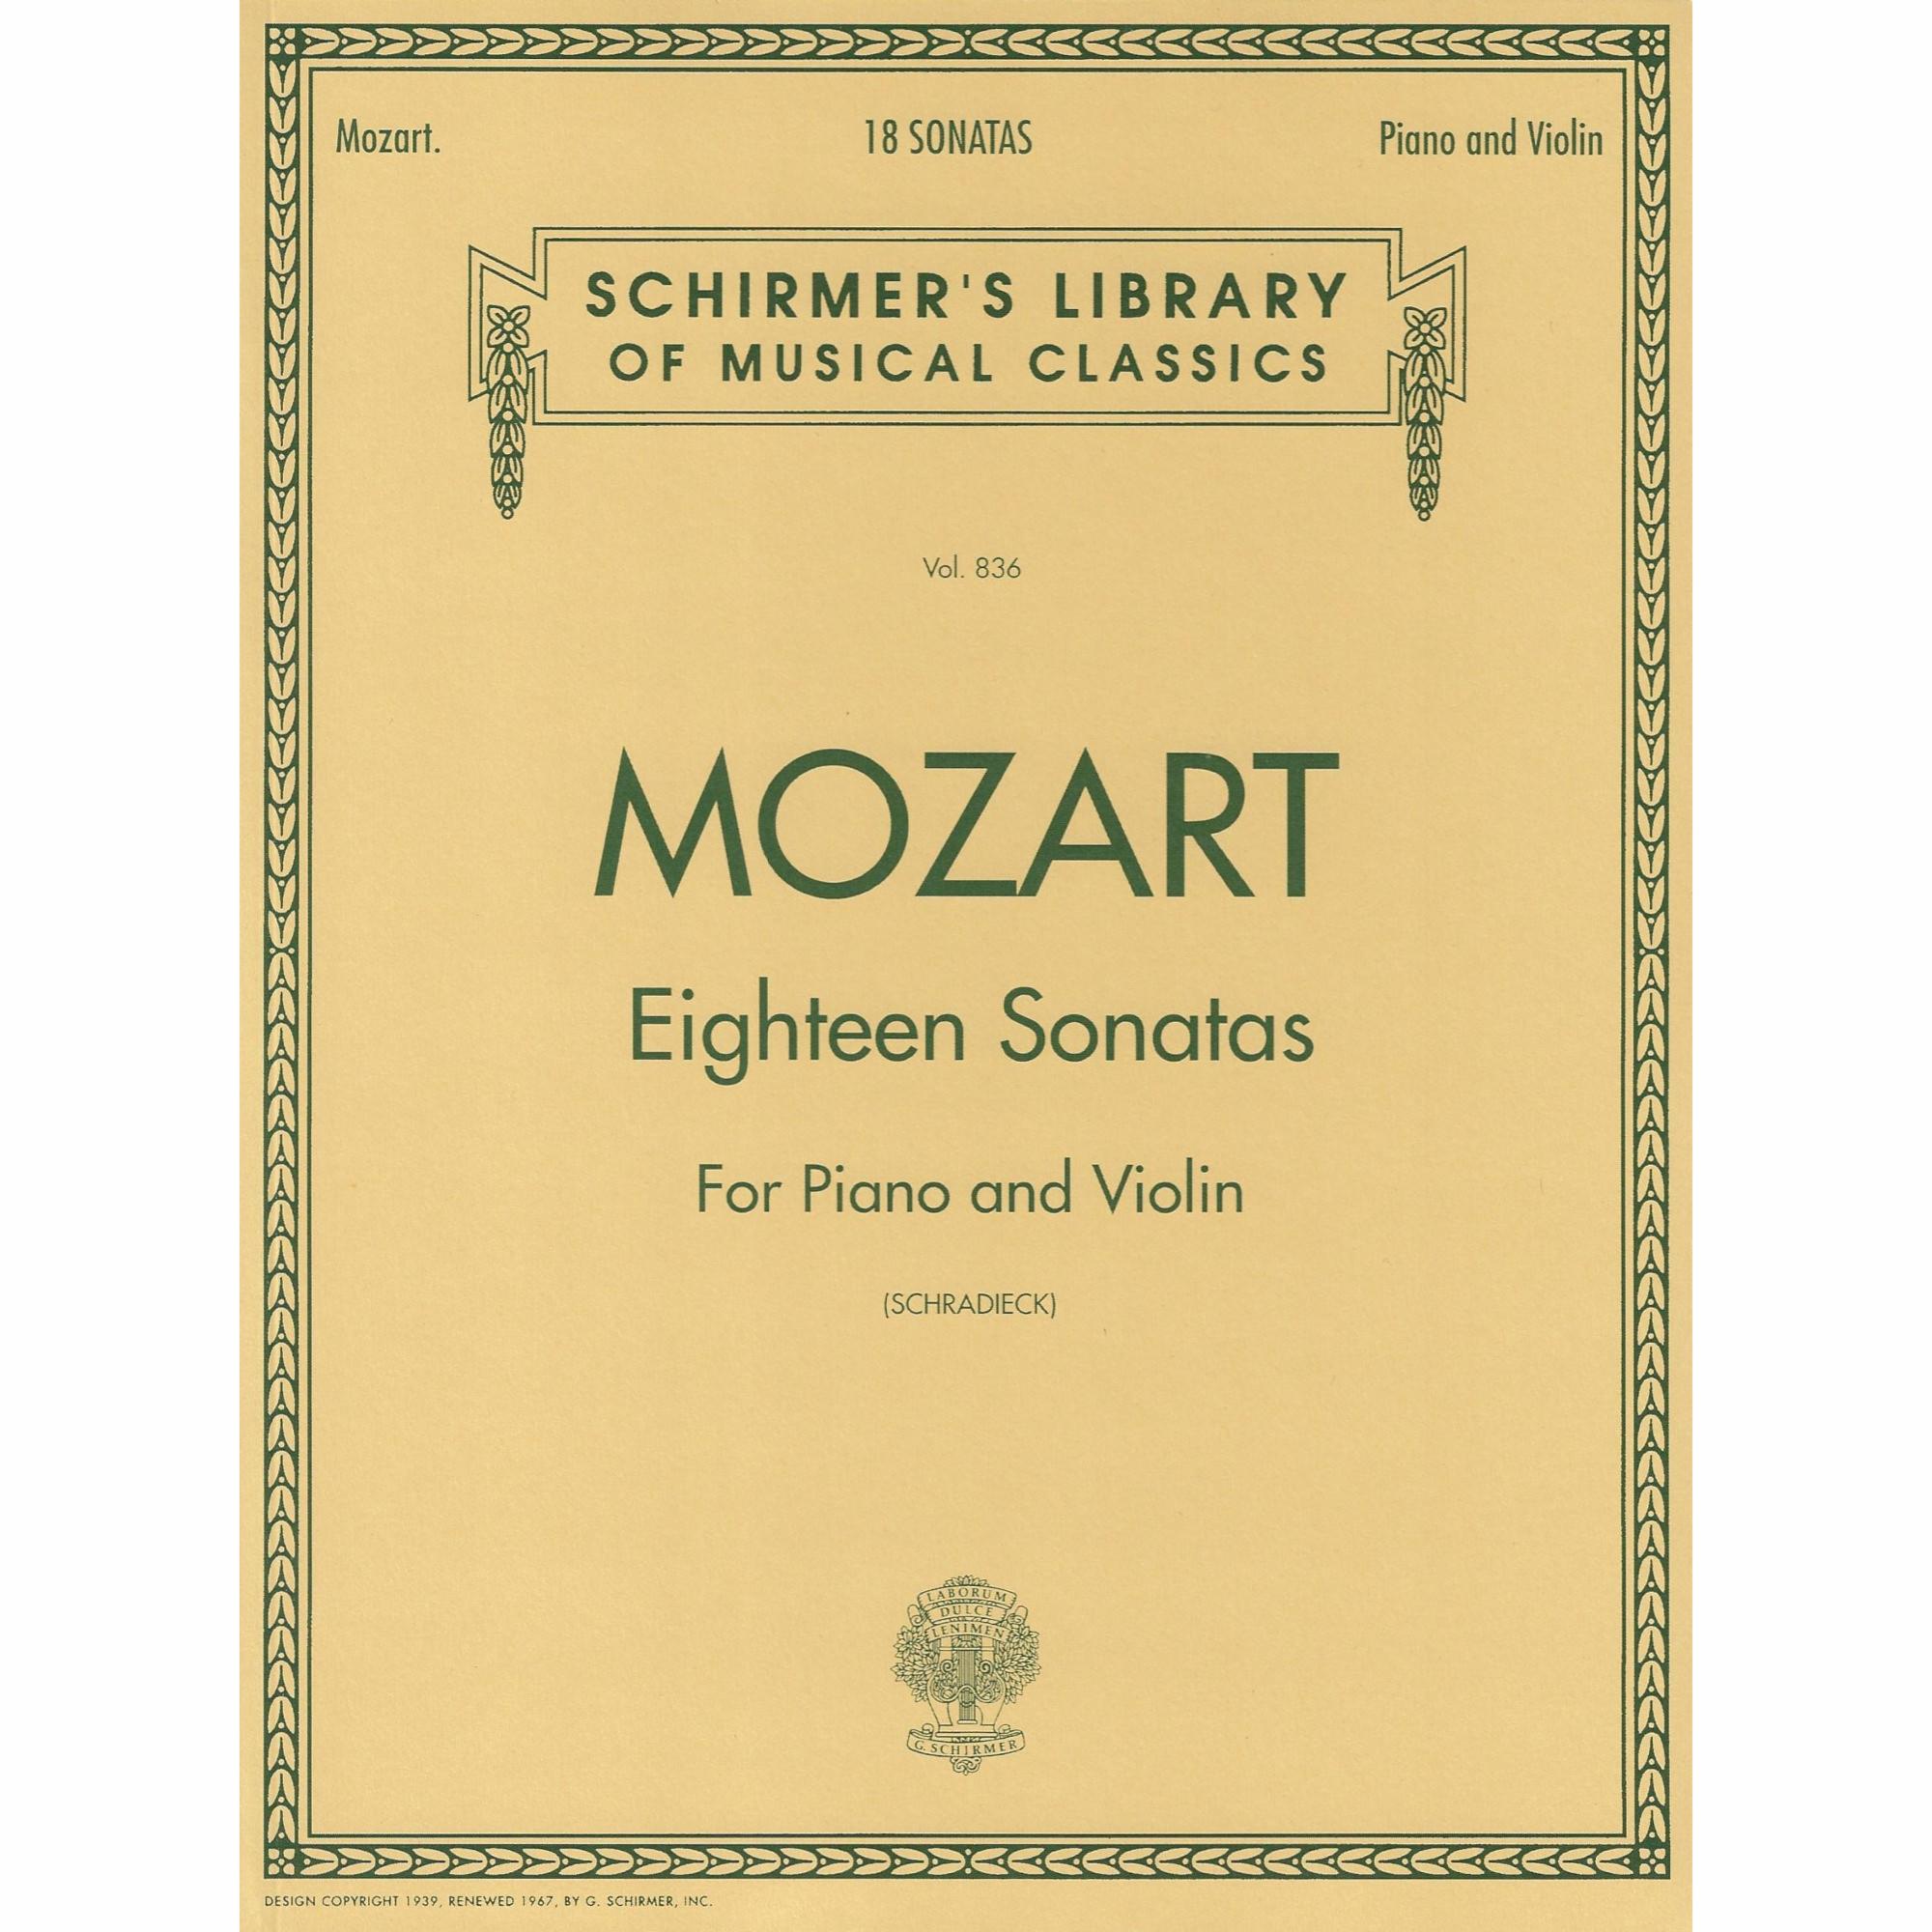 Mozart -- Eighteen Sonatas for Violin and Piano